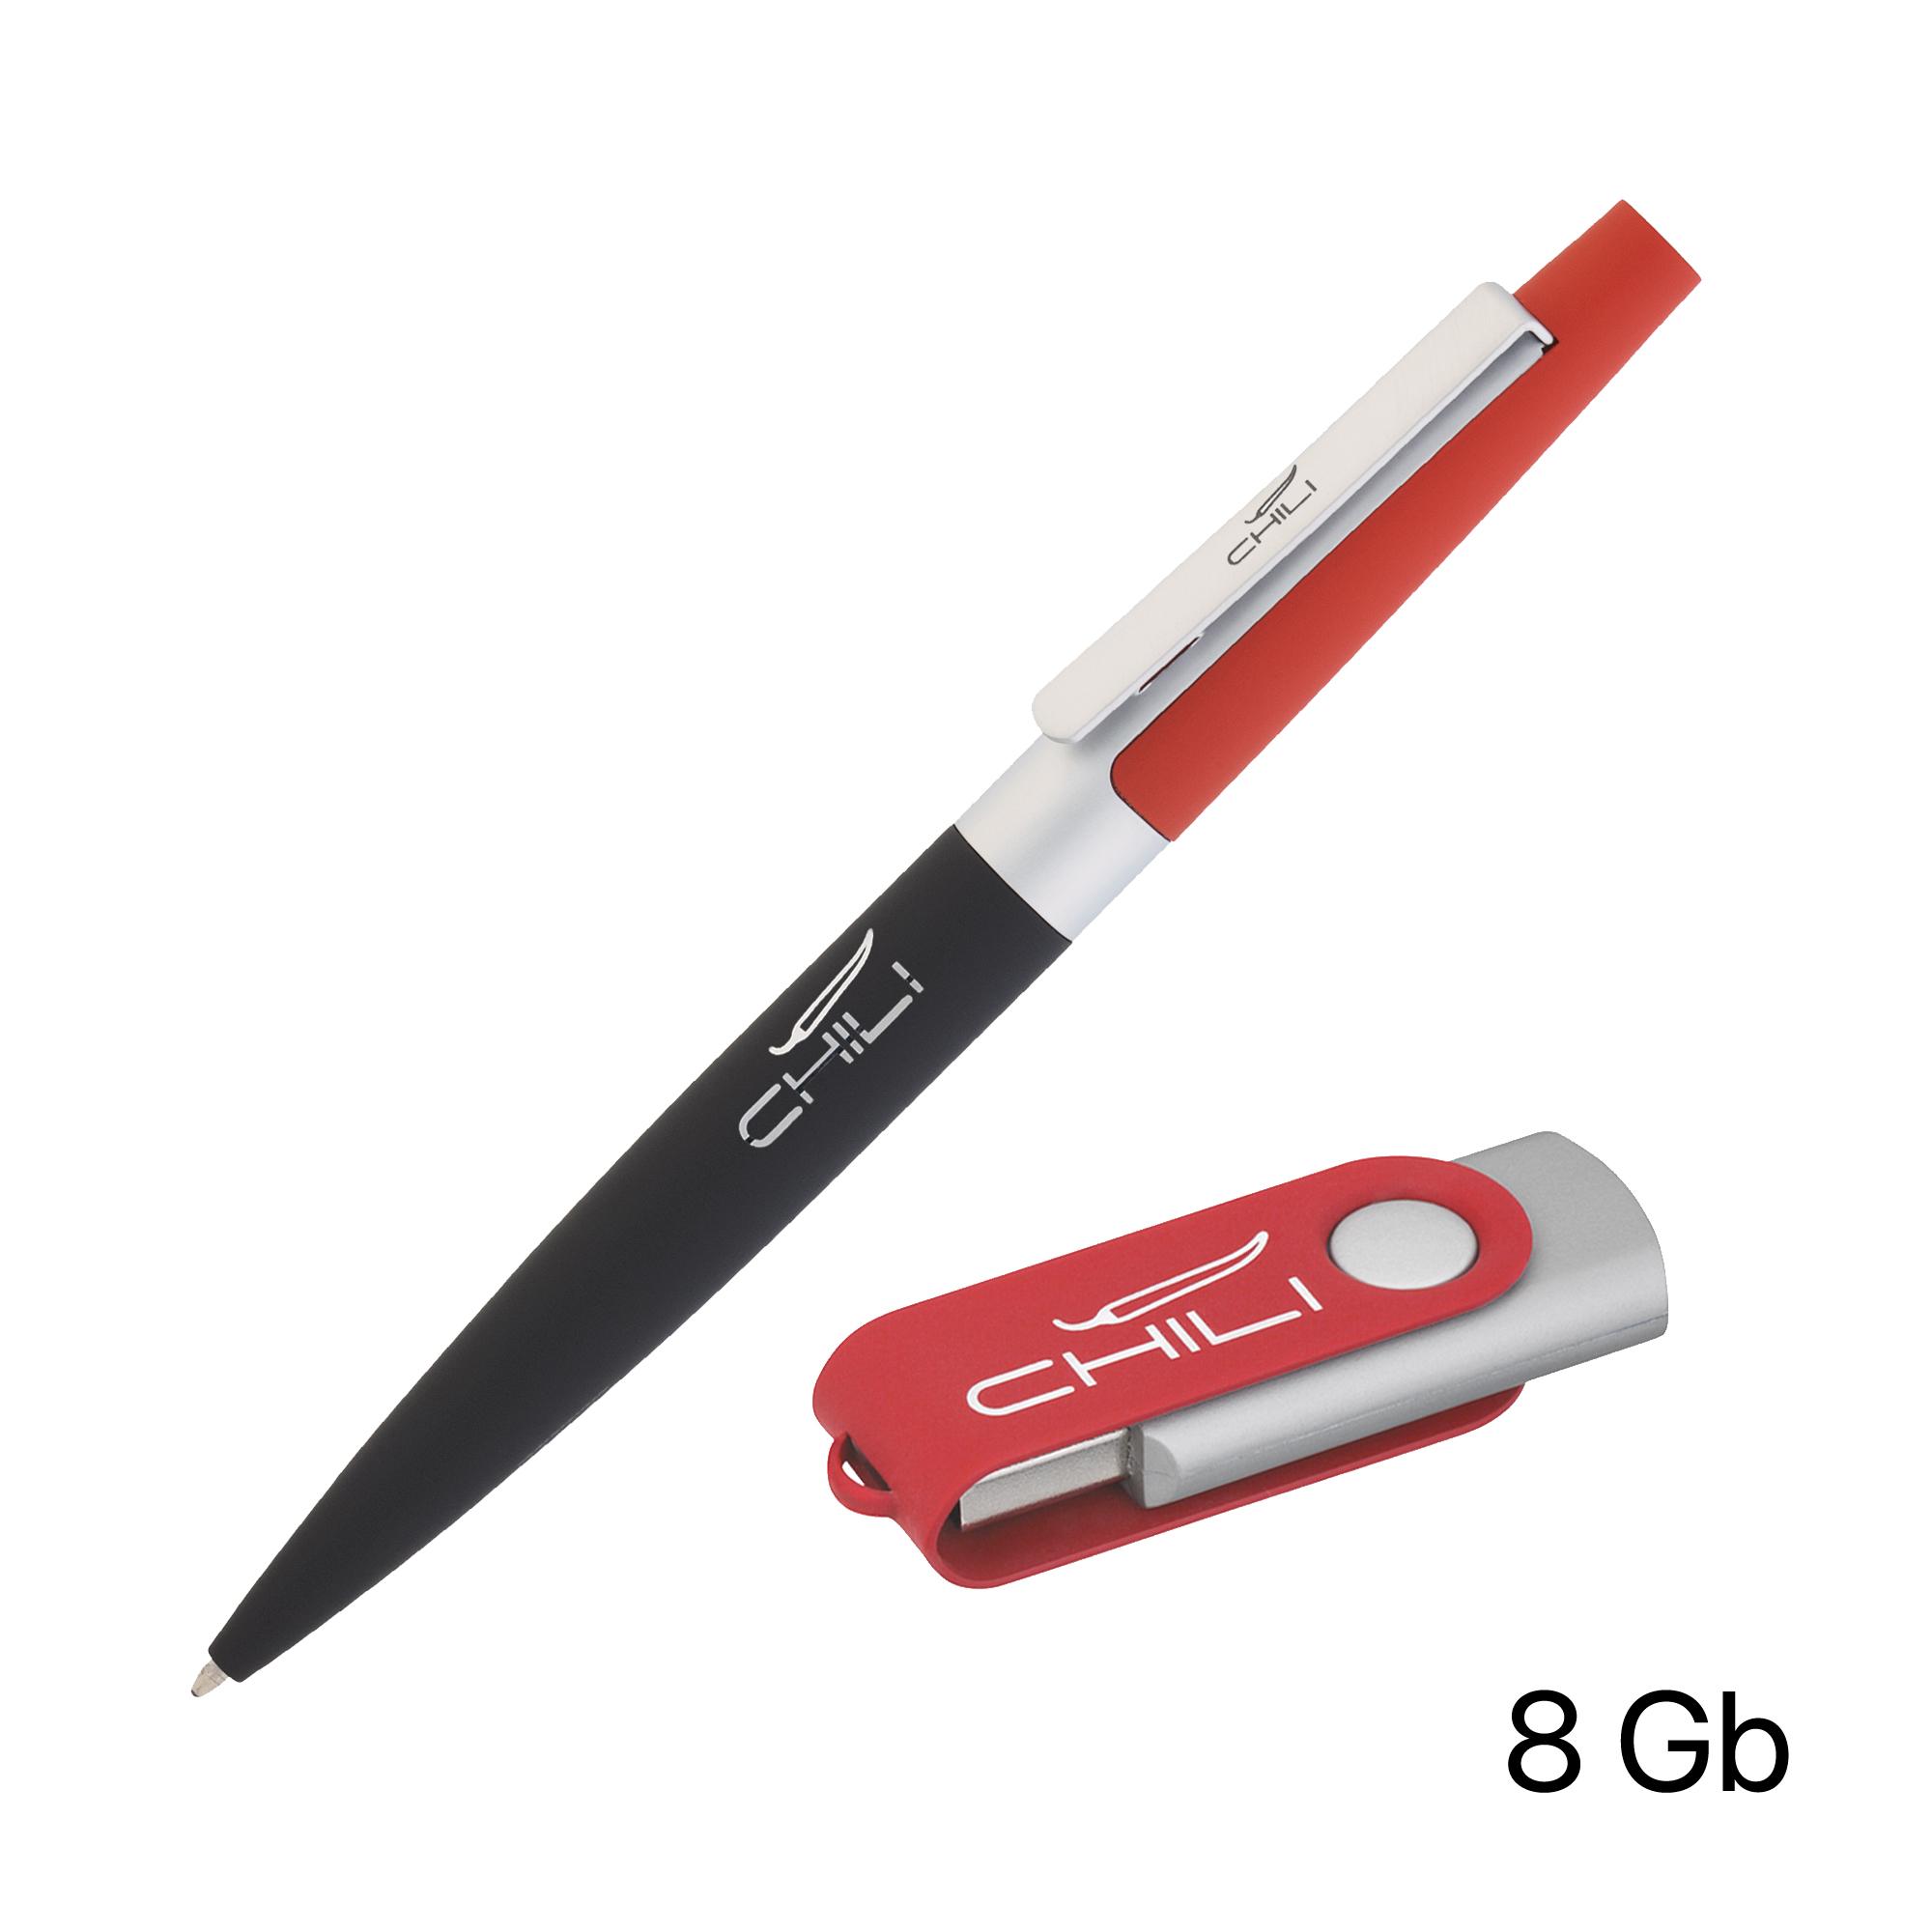 Набор ручка + флеш-карта 8 Гб в футляре, черный/желтый, покрытие soft touch #, цвет красный с черным, фото 1